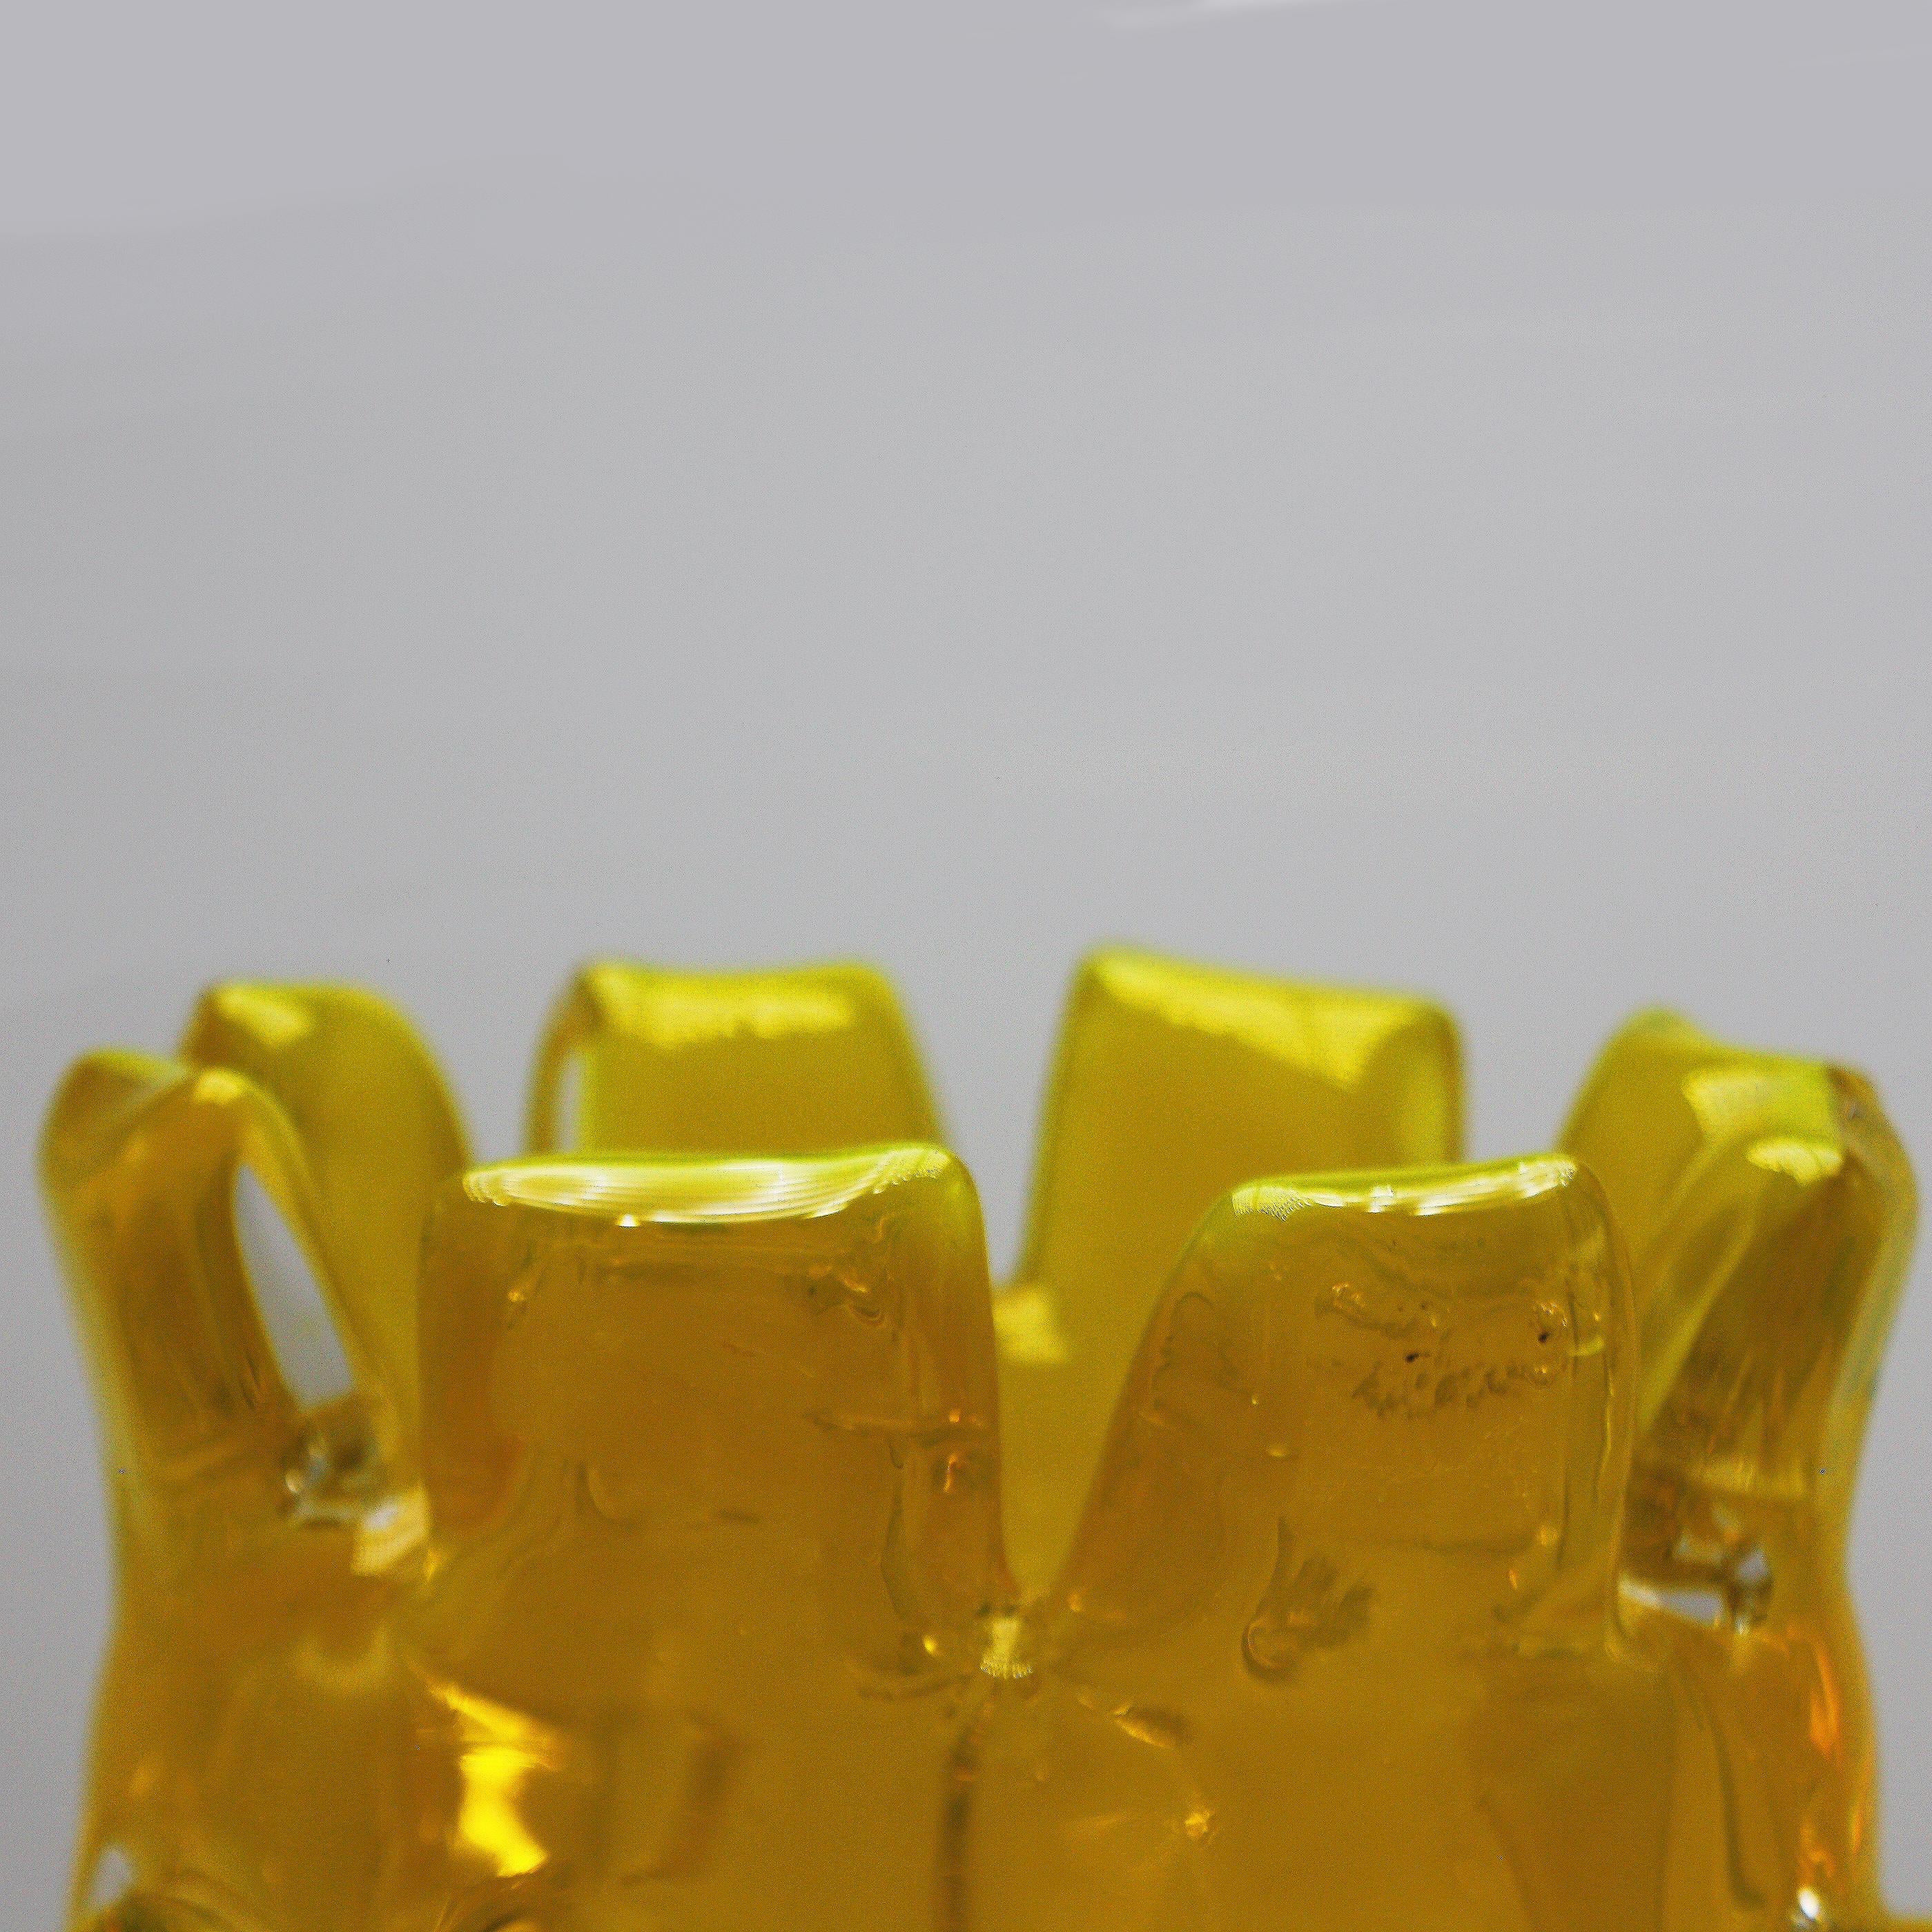 Yellow midcentury Murano glass vase, circa 1950.
$2900.